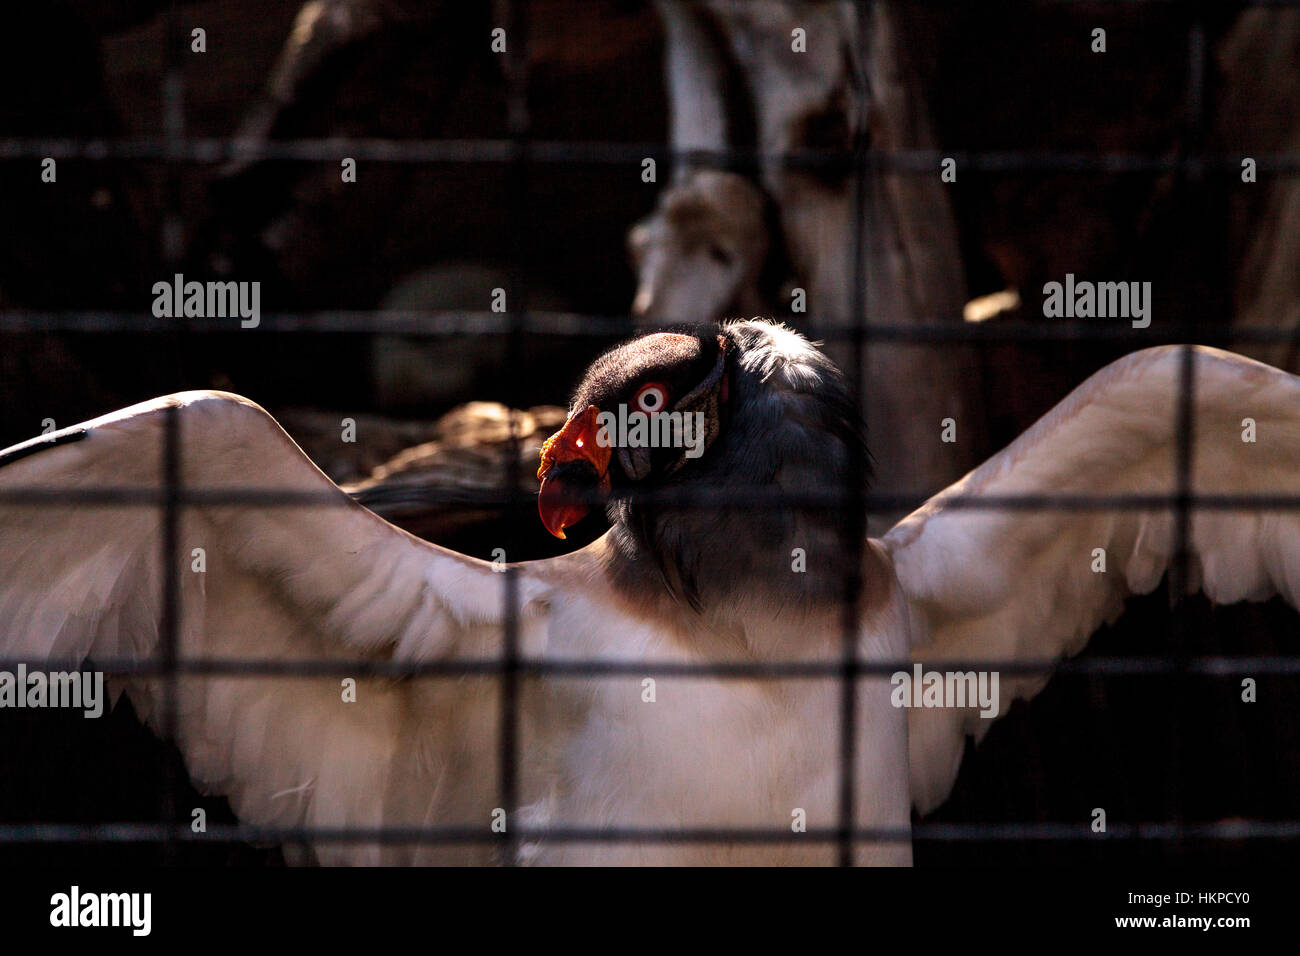 King vulture, Sarcoramphus papa, se trouve derrière les barreaux, écartant ses ailes. Banque D'Images